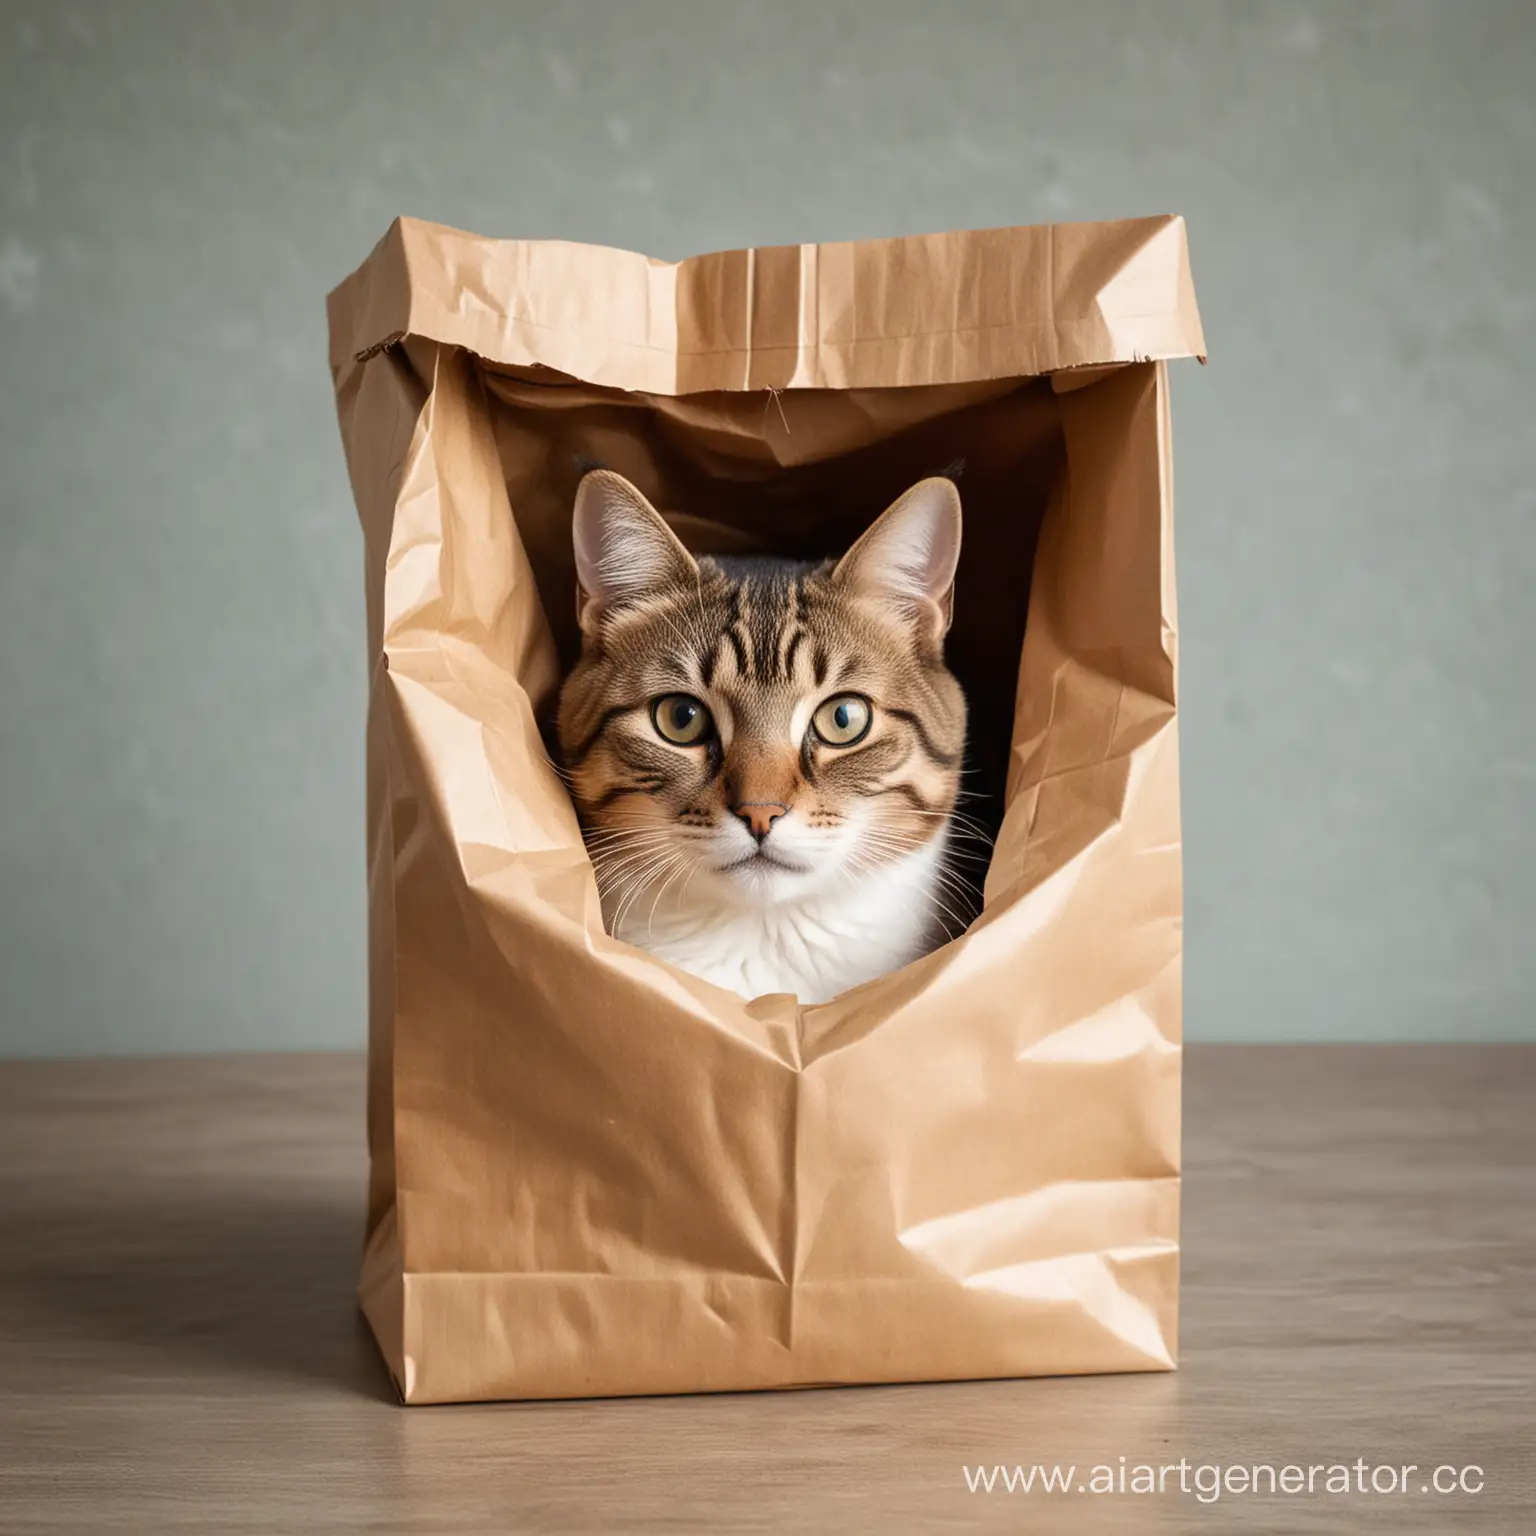 Кот сидит в бумажном пакете, сверху из пакета торчит только голова кота